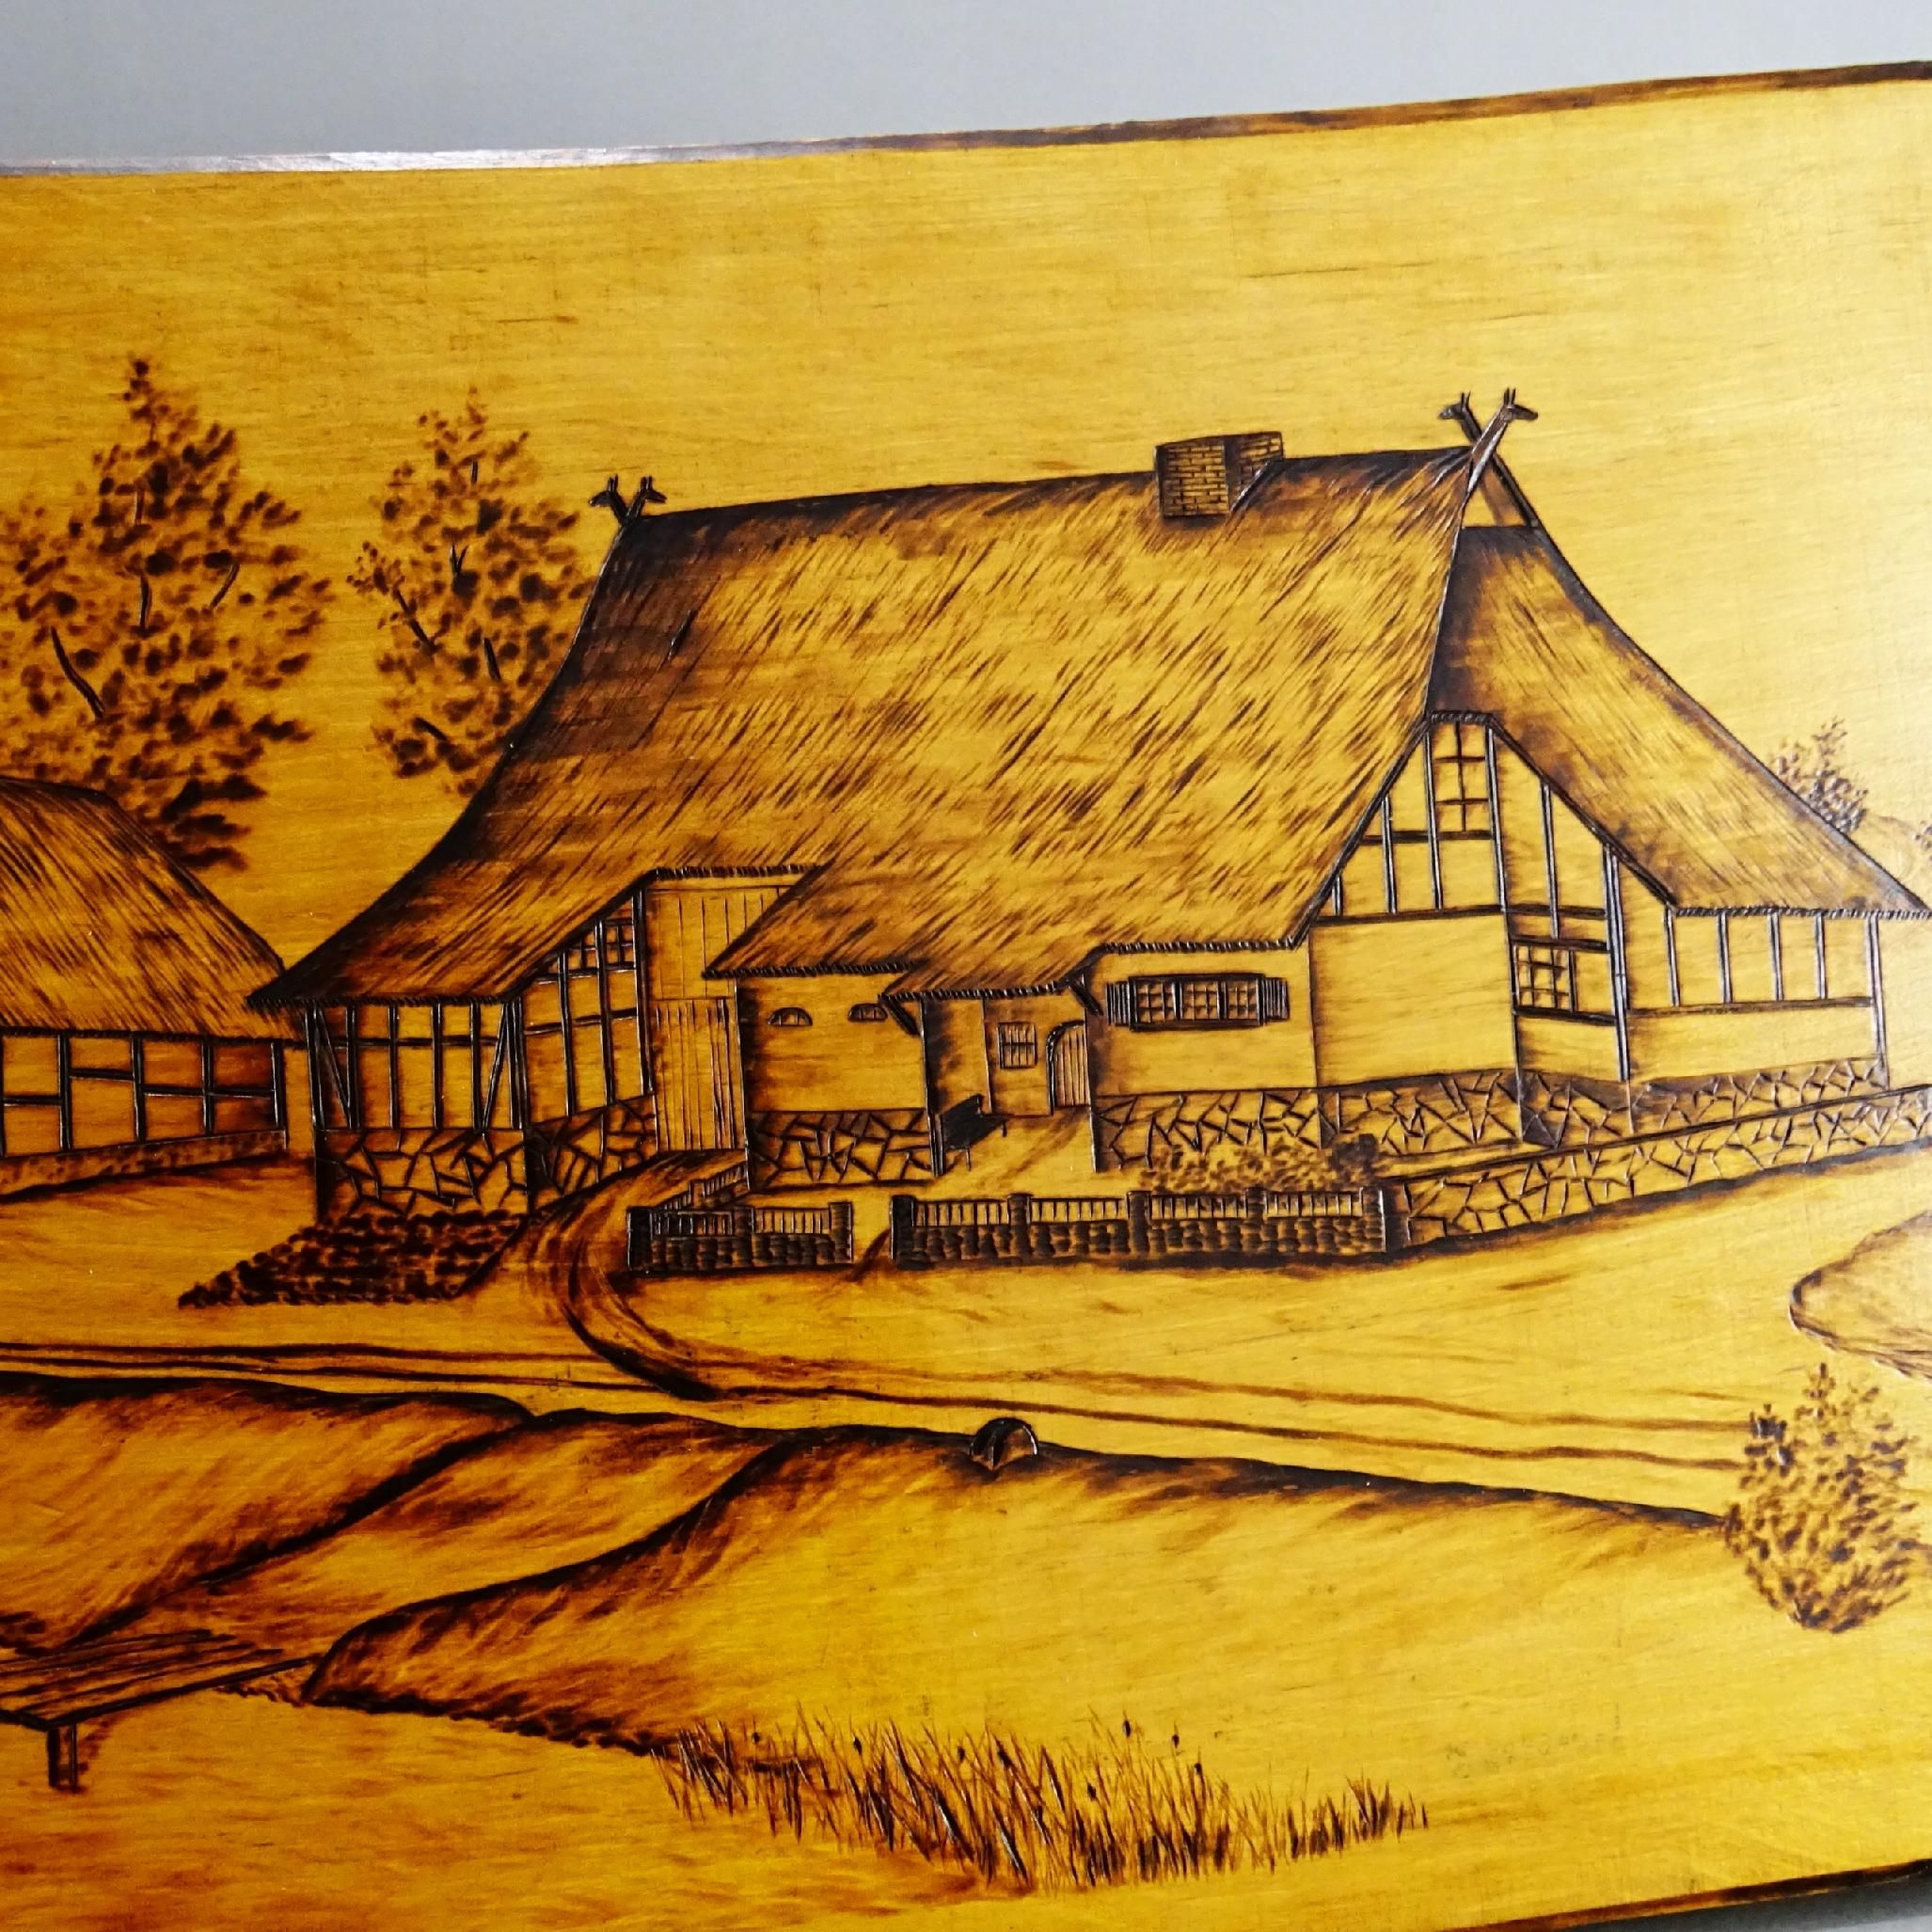 piękny stary obrazek w drewnie pirografia wiejskie zabudowania